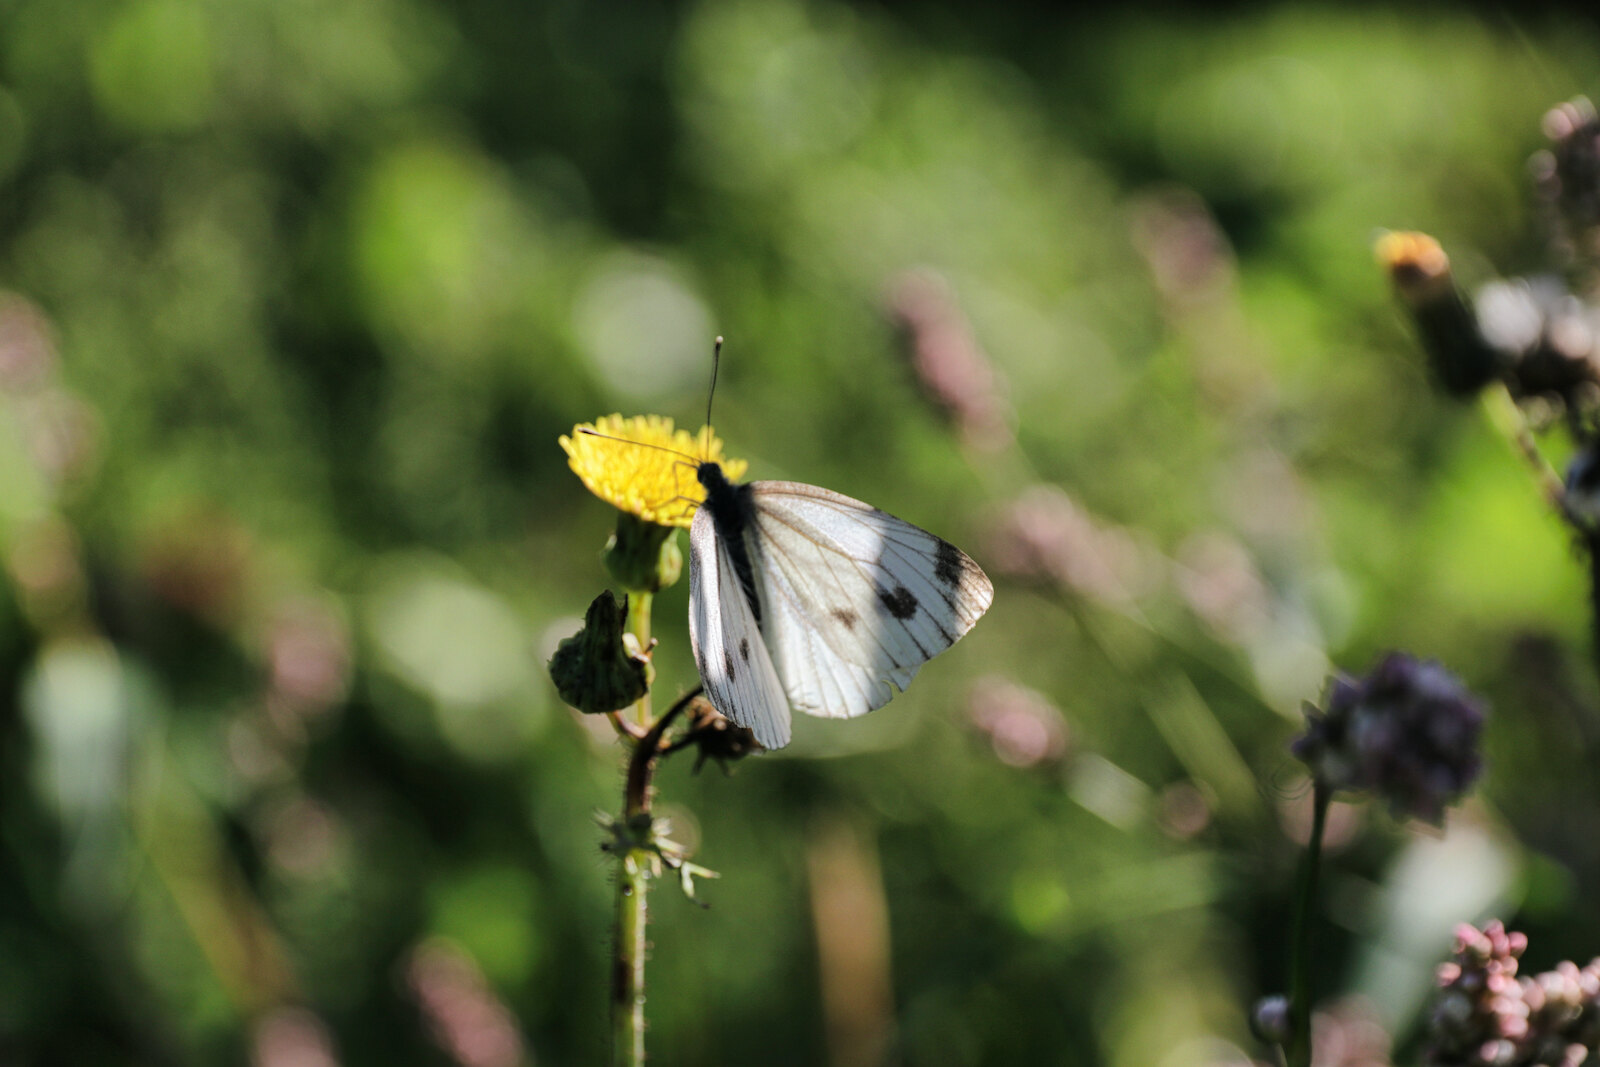 Wildflowers attract many butterflies in the vineyards of Wijngoed De Reestlandhoeve